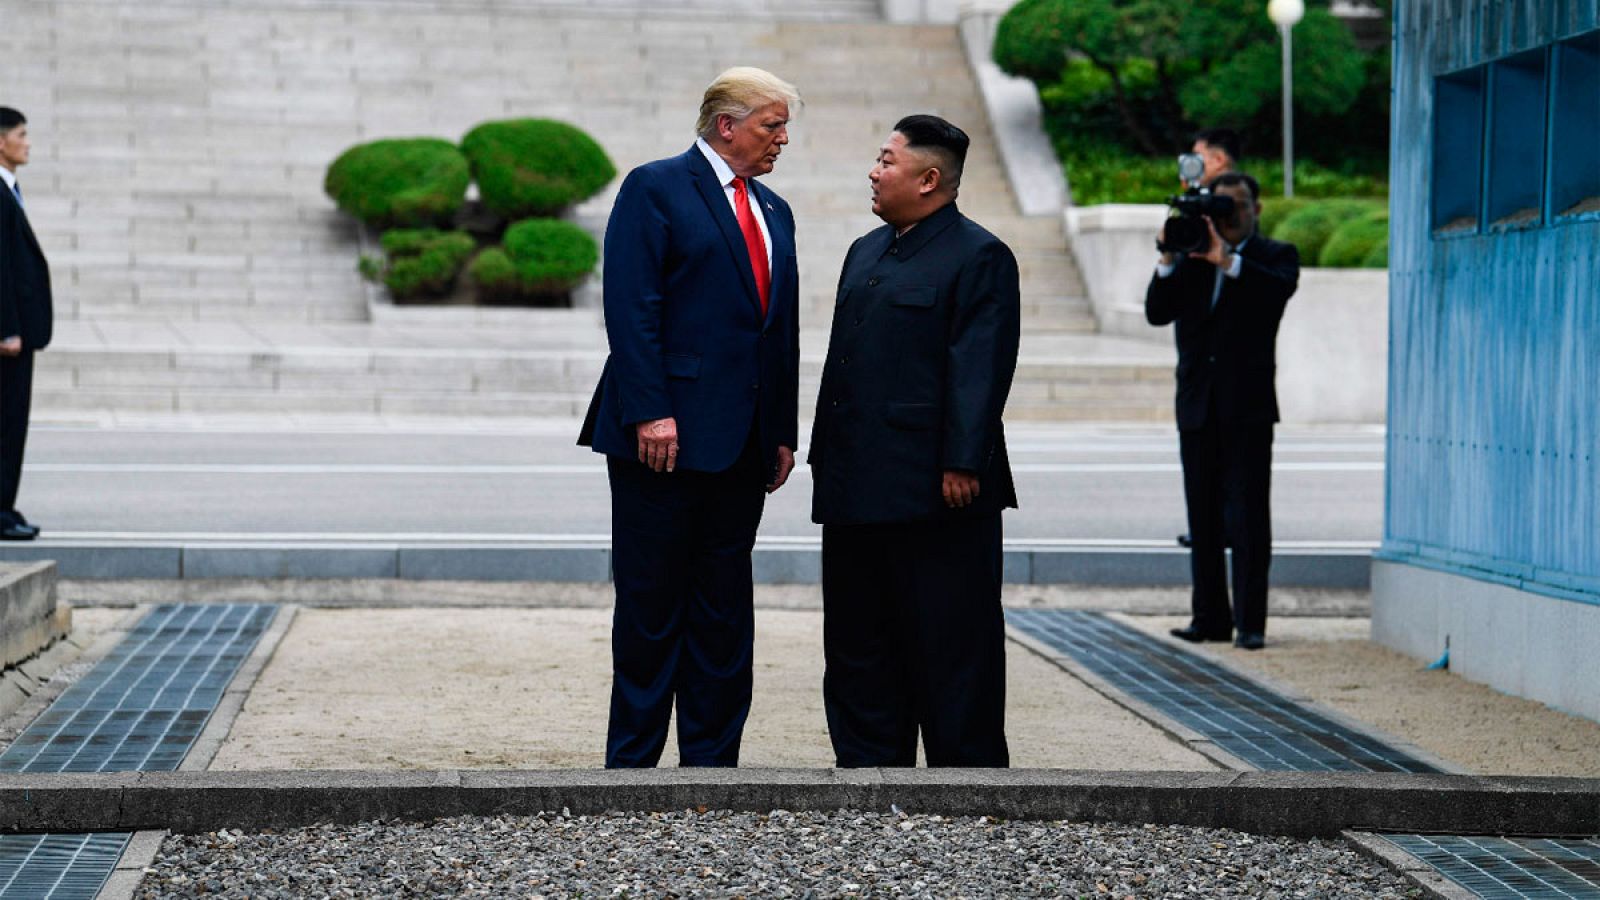 Trump entra en Corea del Norte tras saludar a Kim Jong-un en la frontera entre las dos Coreas: "Es un gran día para el mundo"